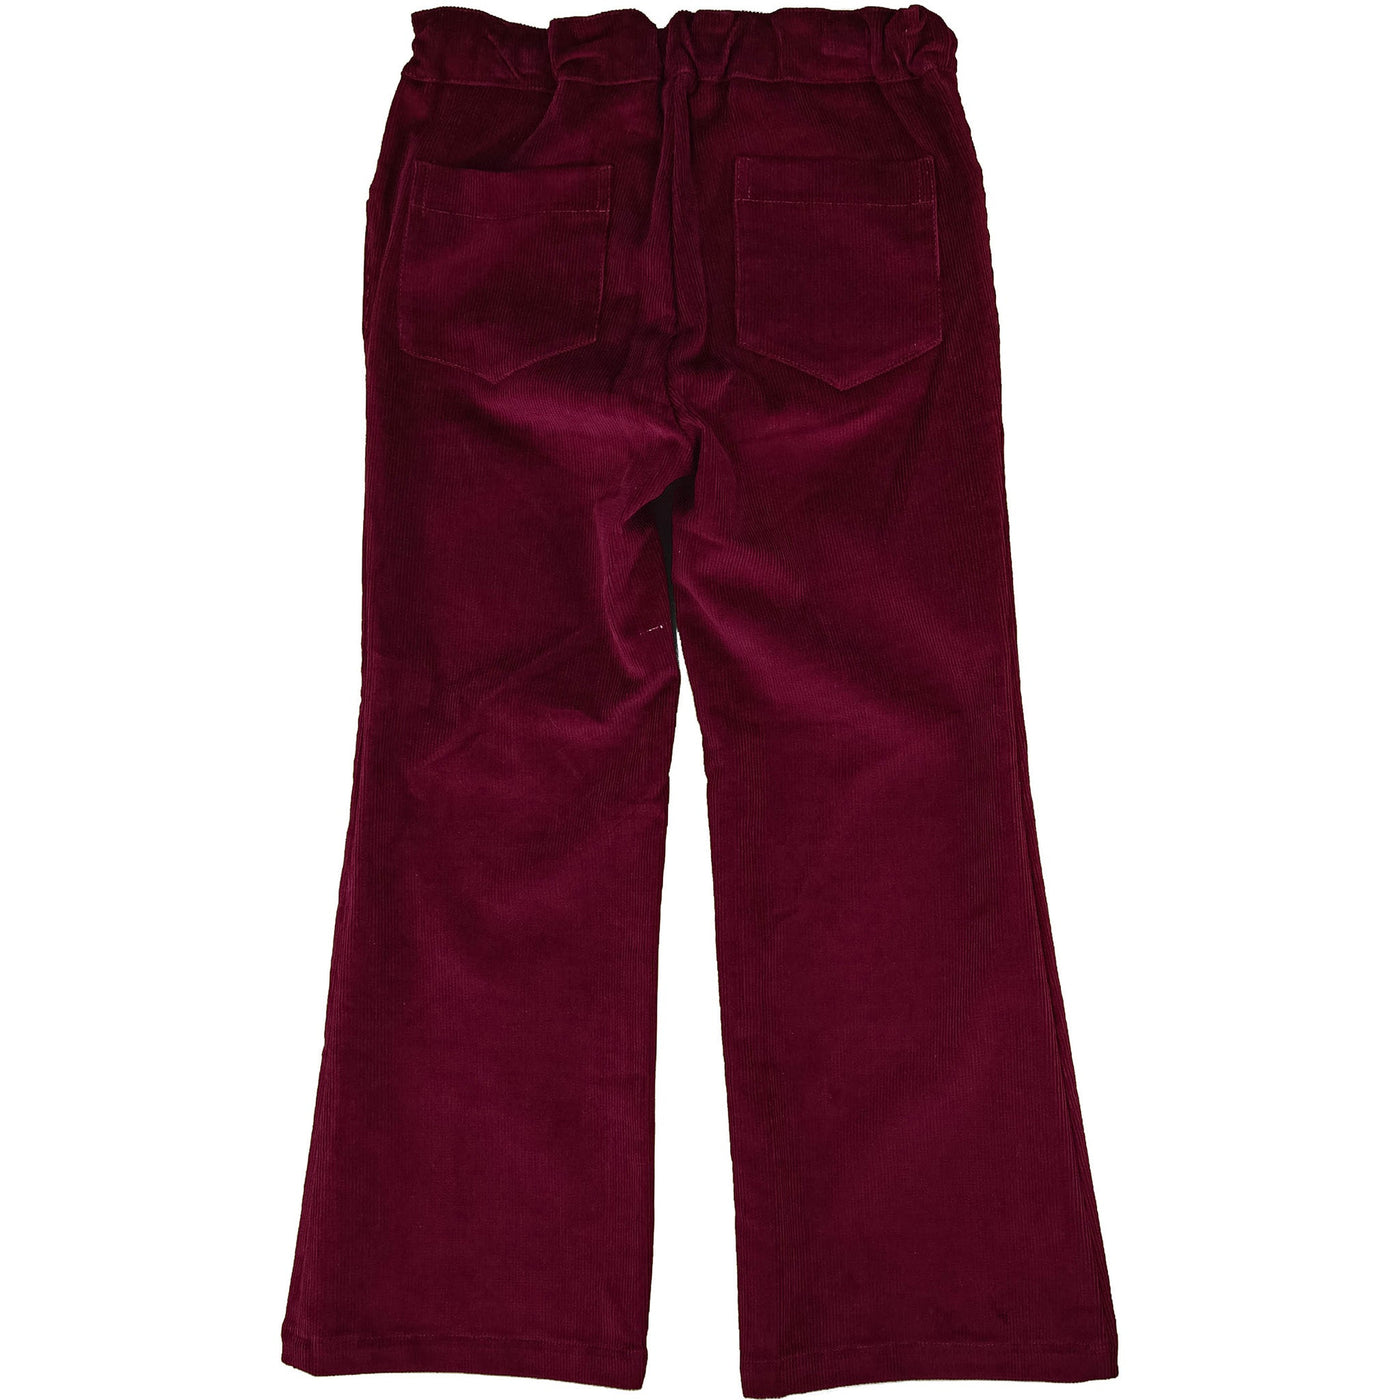 Pantalon de seconde main en velours côtelé pour enfant fille de 4 ans - photo verso